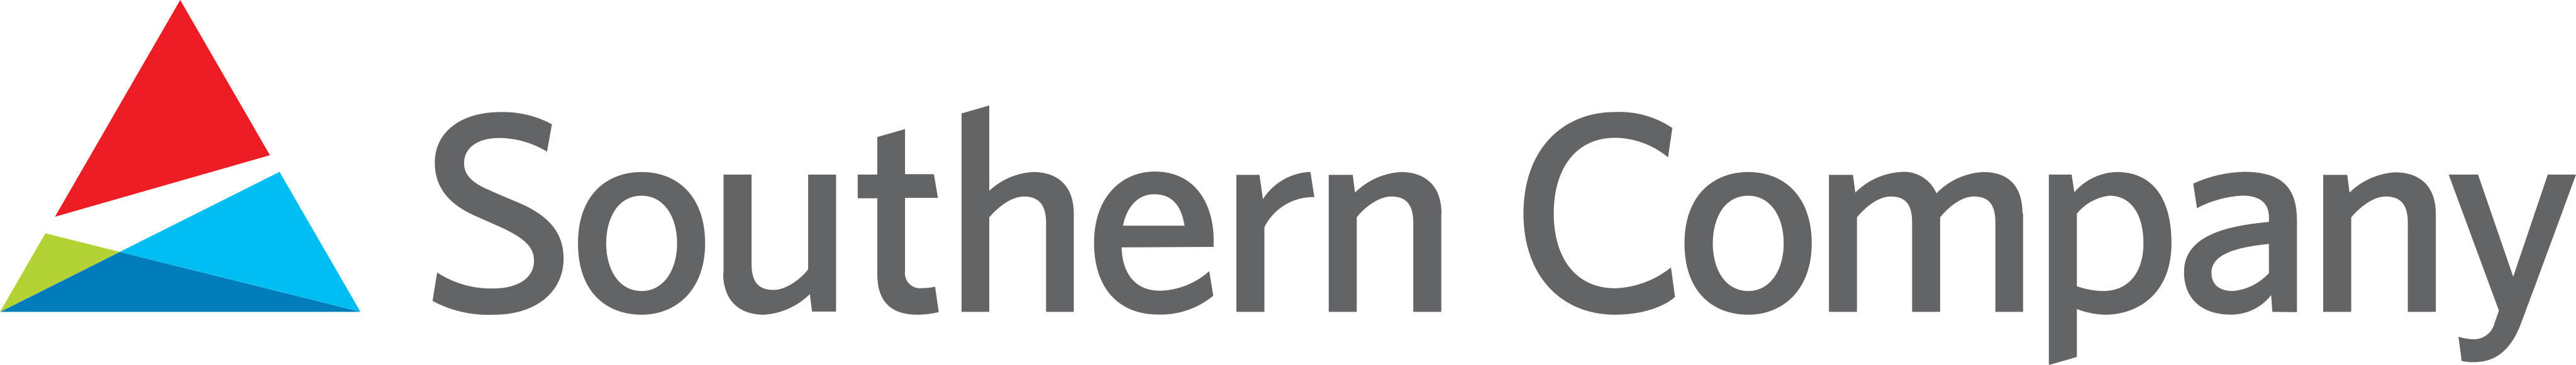 southern company logo - Southern Company Logo